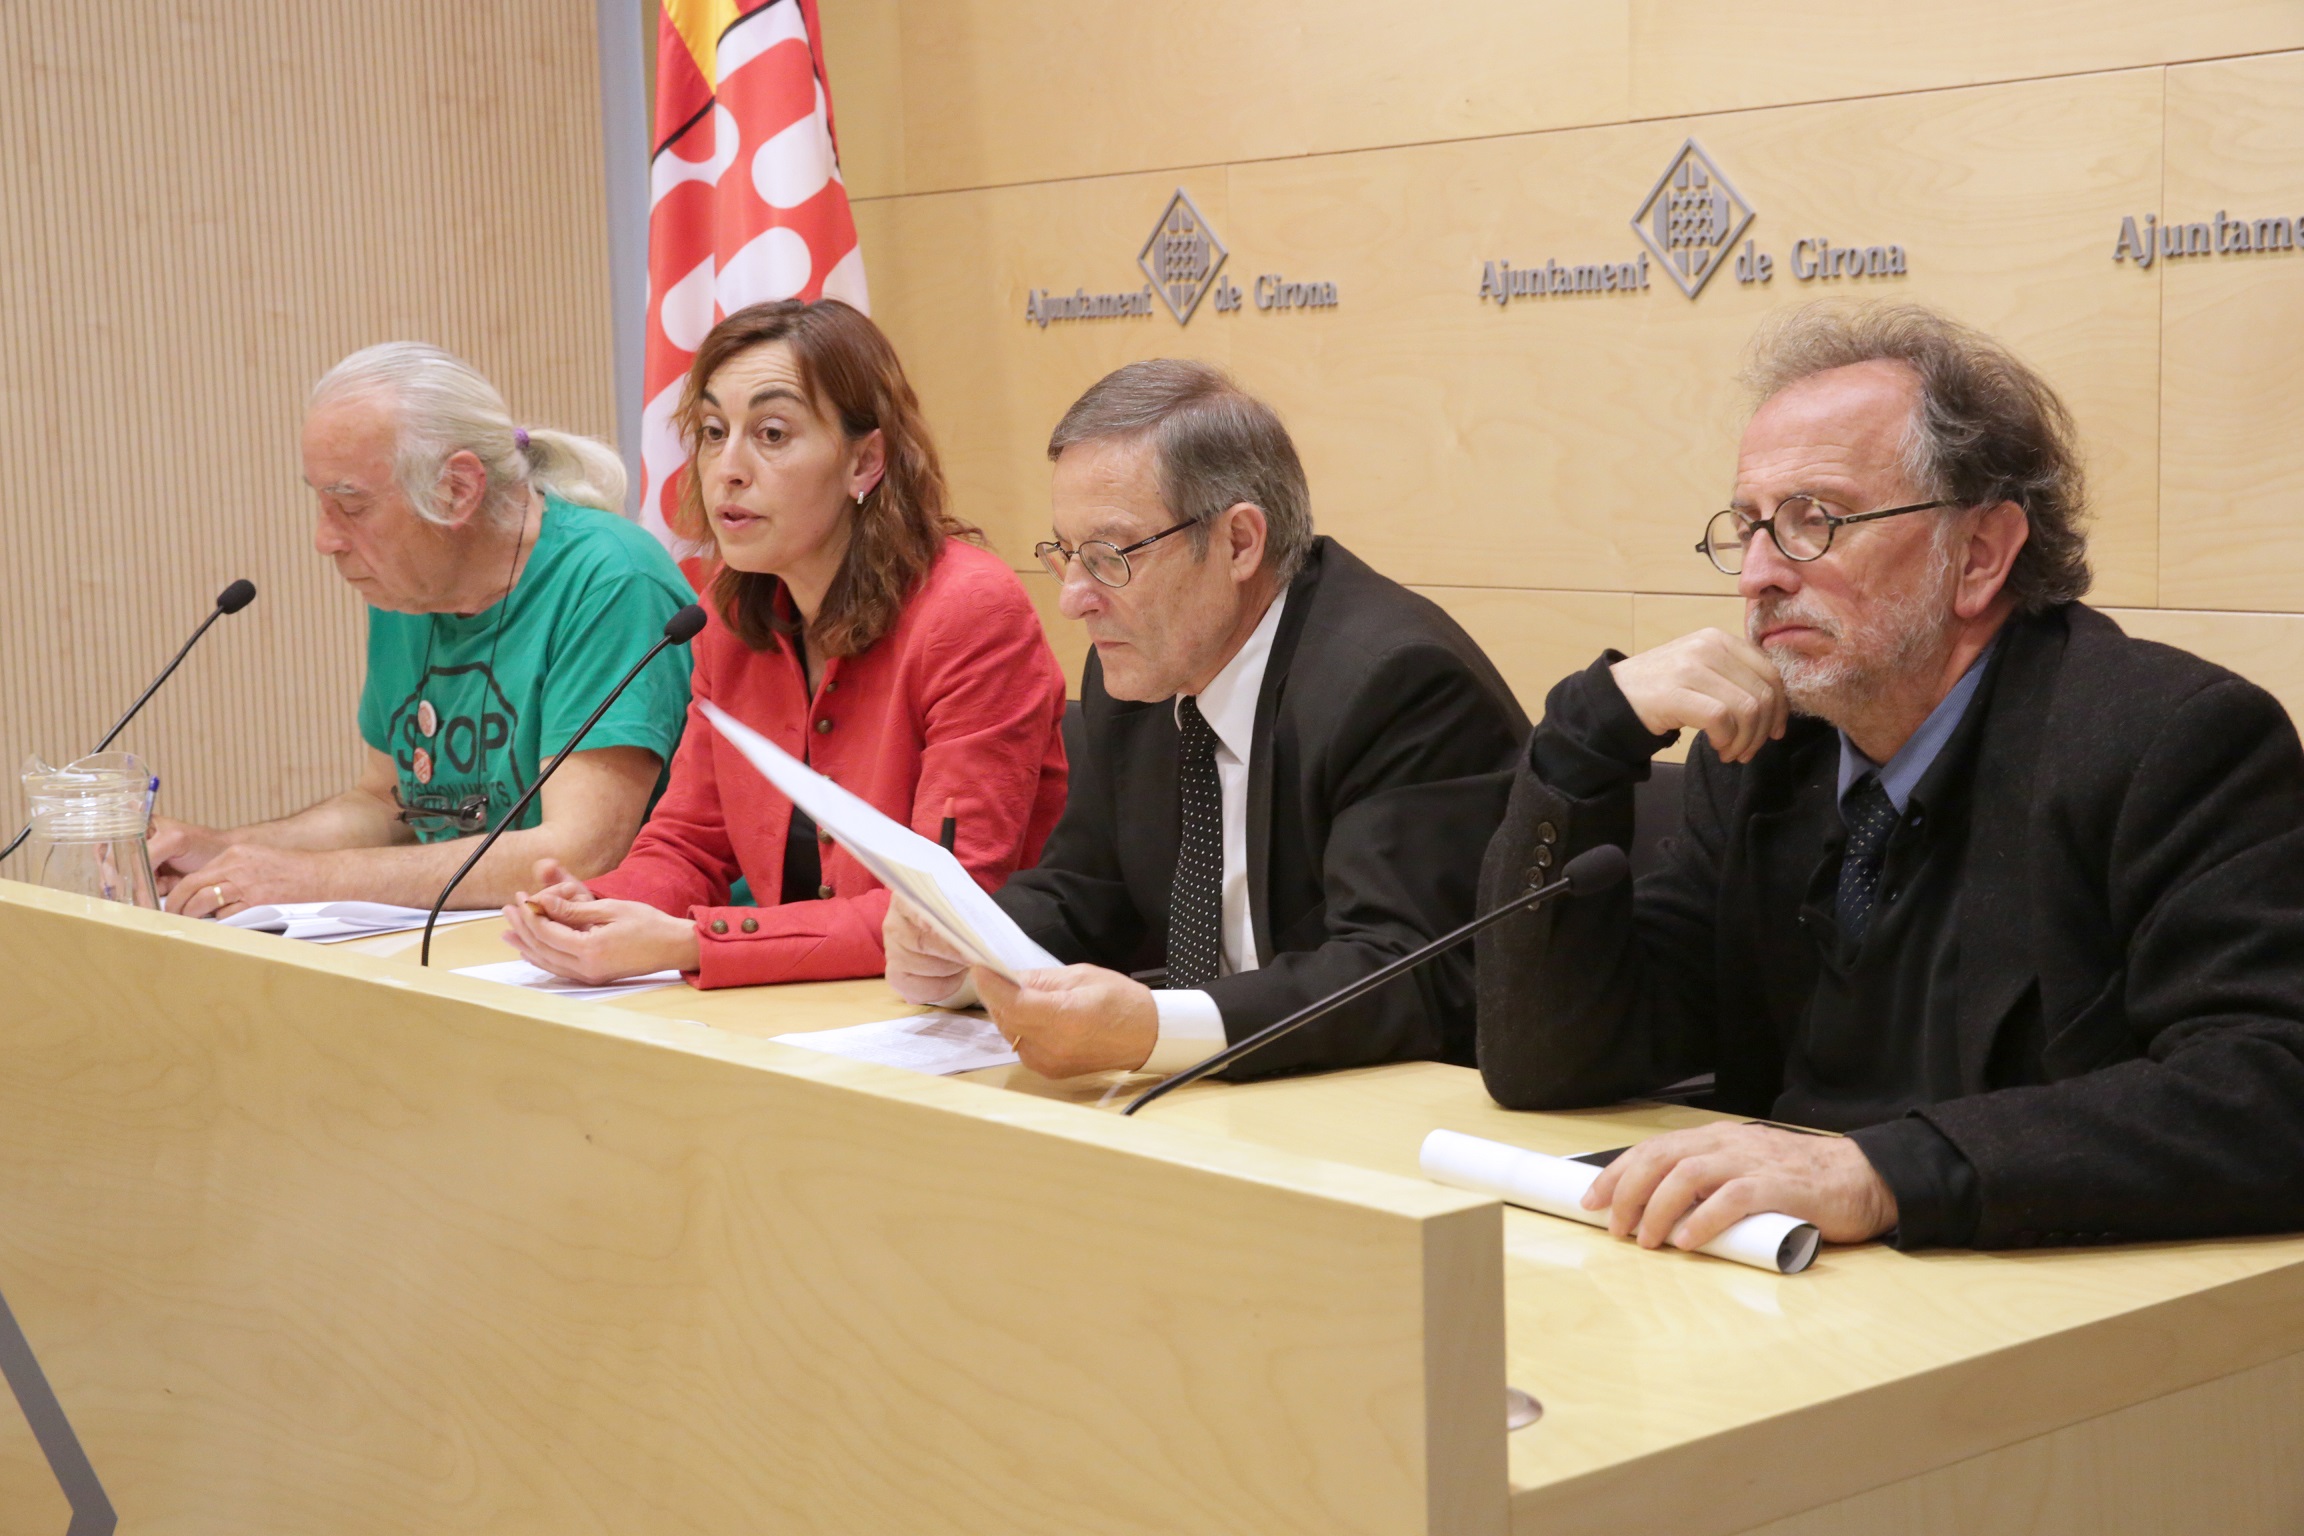 L’Ajuntament de Girona aplicarà una sèrie de mesures per garantir el dret a l’habitatge a la ciutat després de la suspensió de la Llei 24/2015